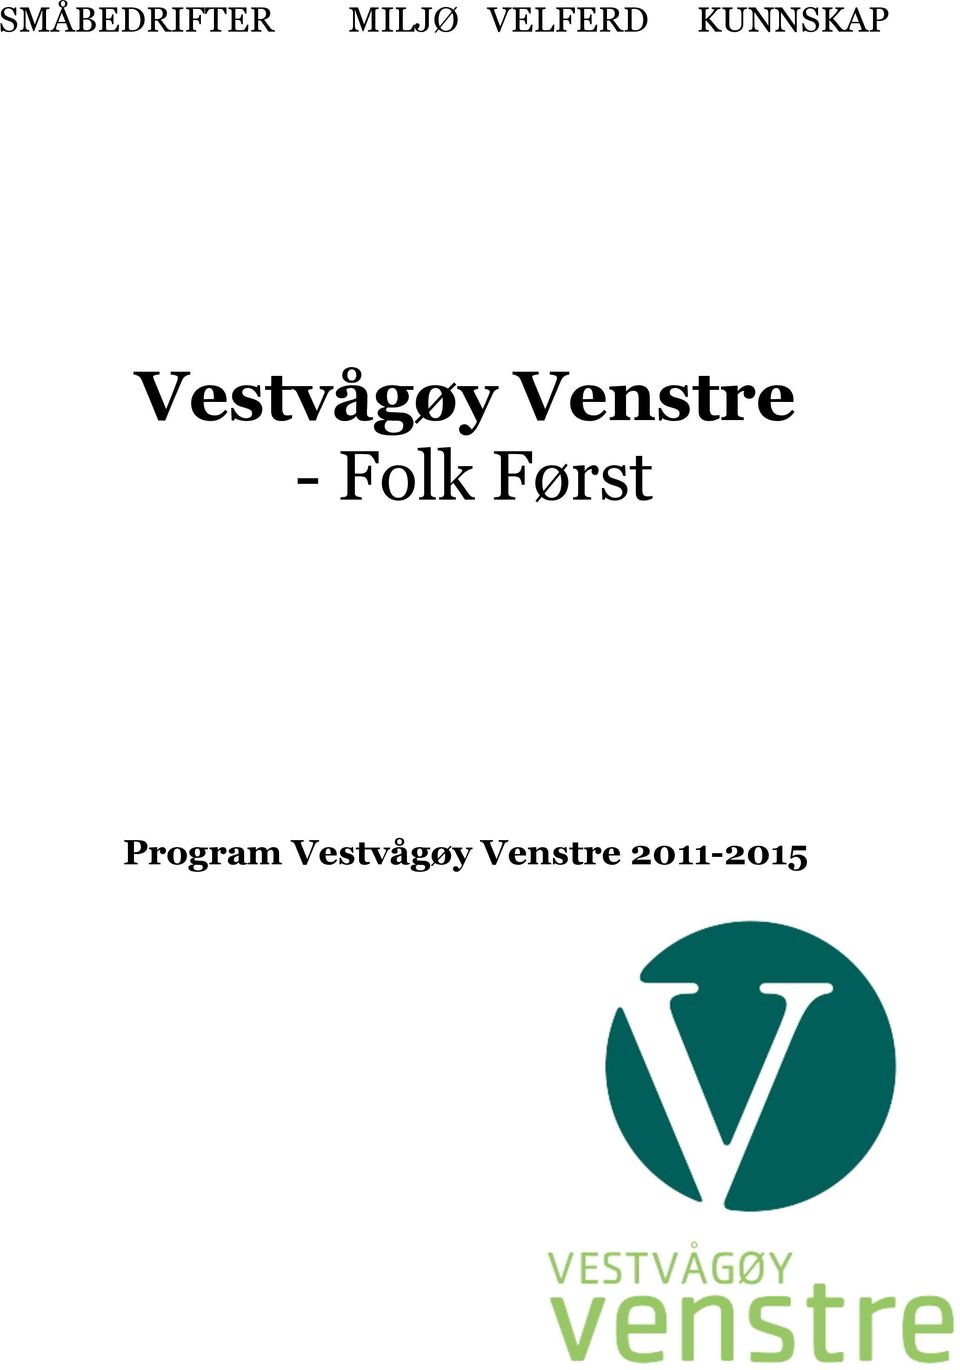 Vestvågøy Venstre - Folk